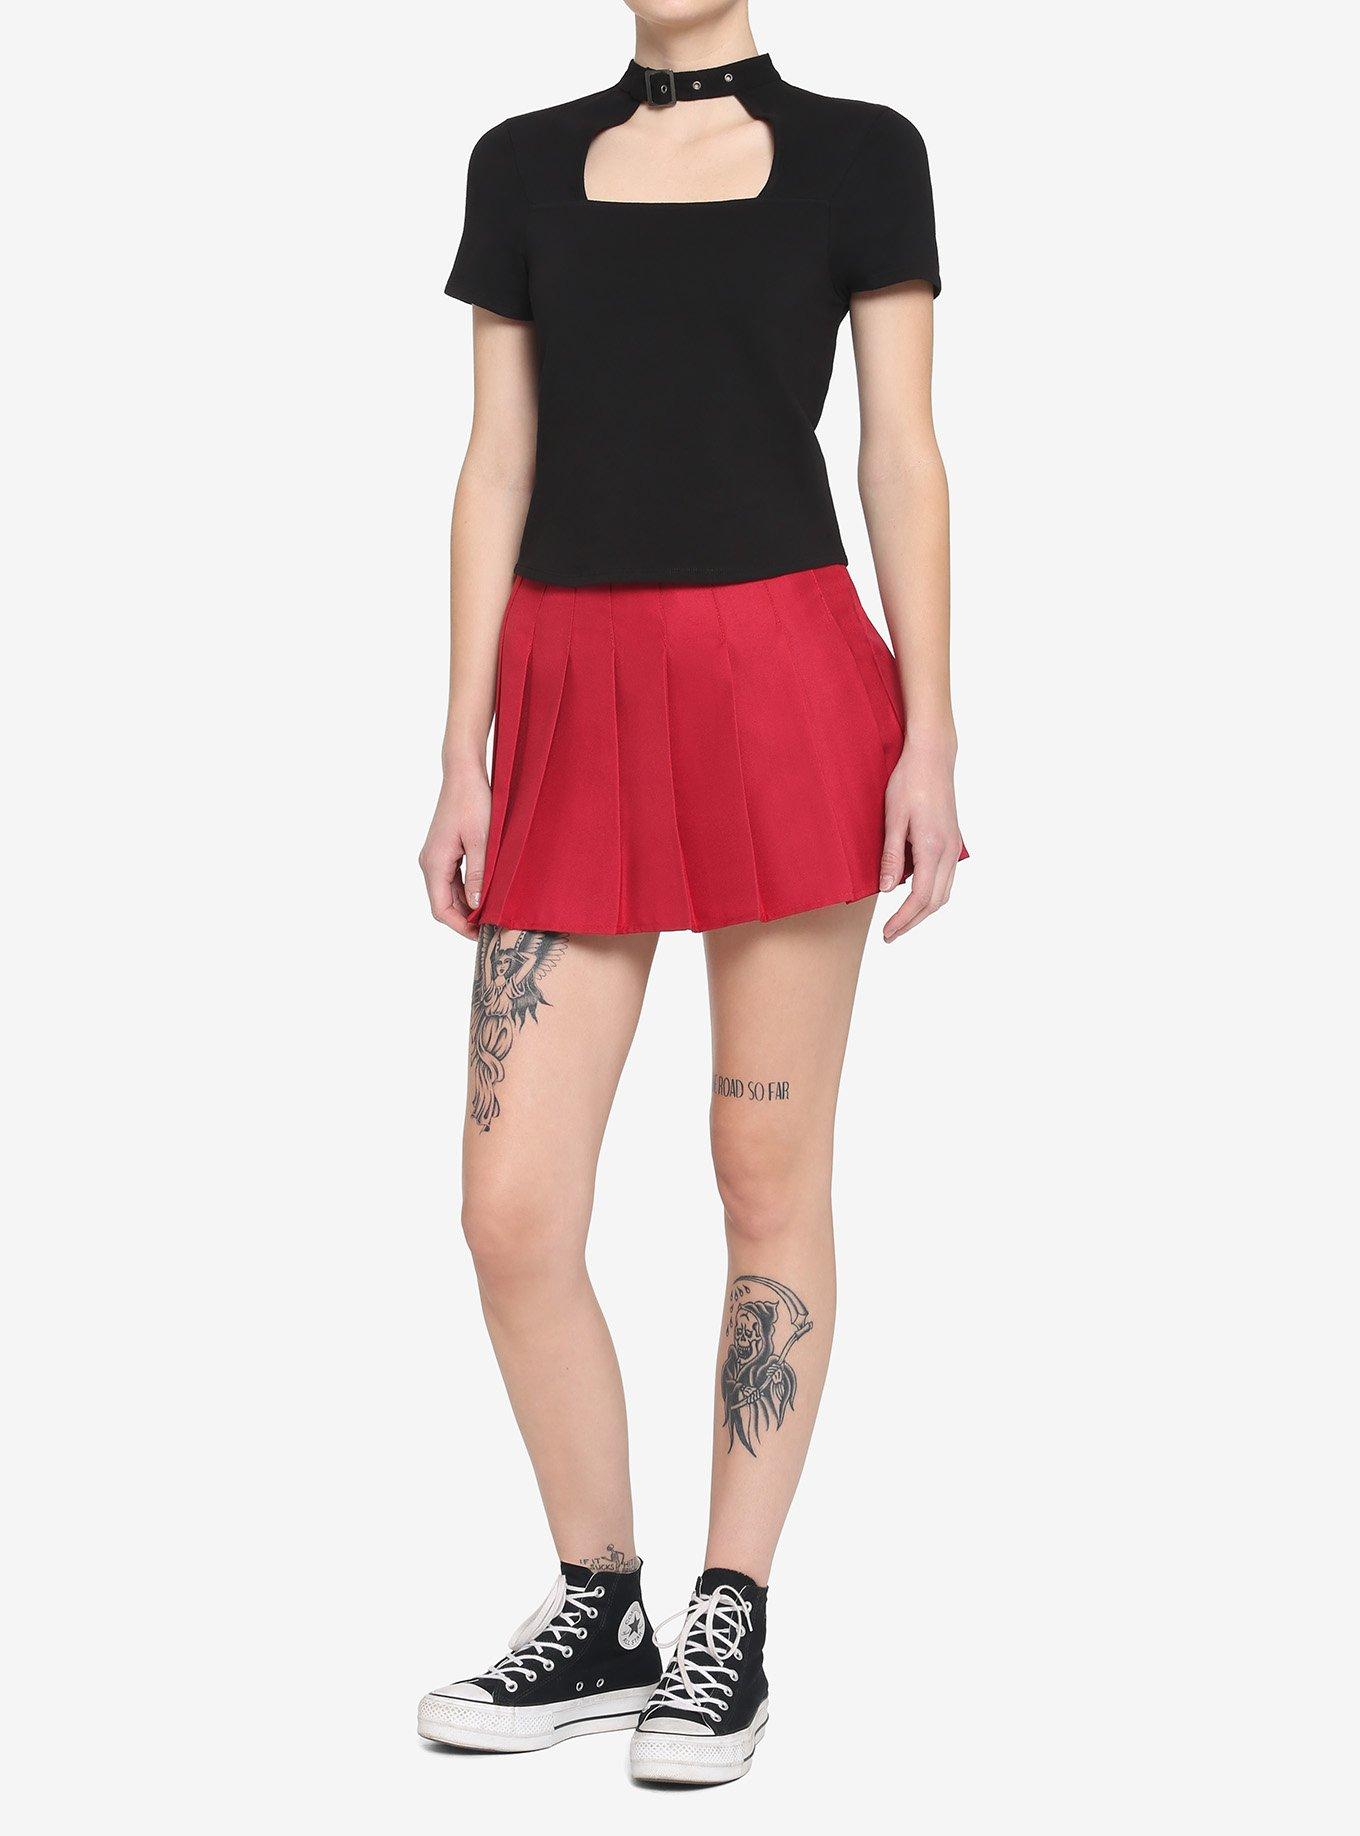 Black Buckle Choker Cutout Girls Crop T-Shirt, BLACK, alternate